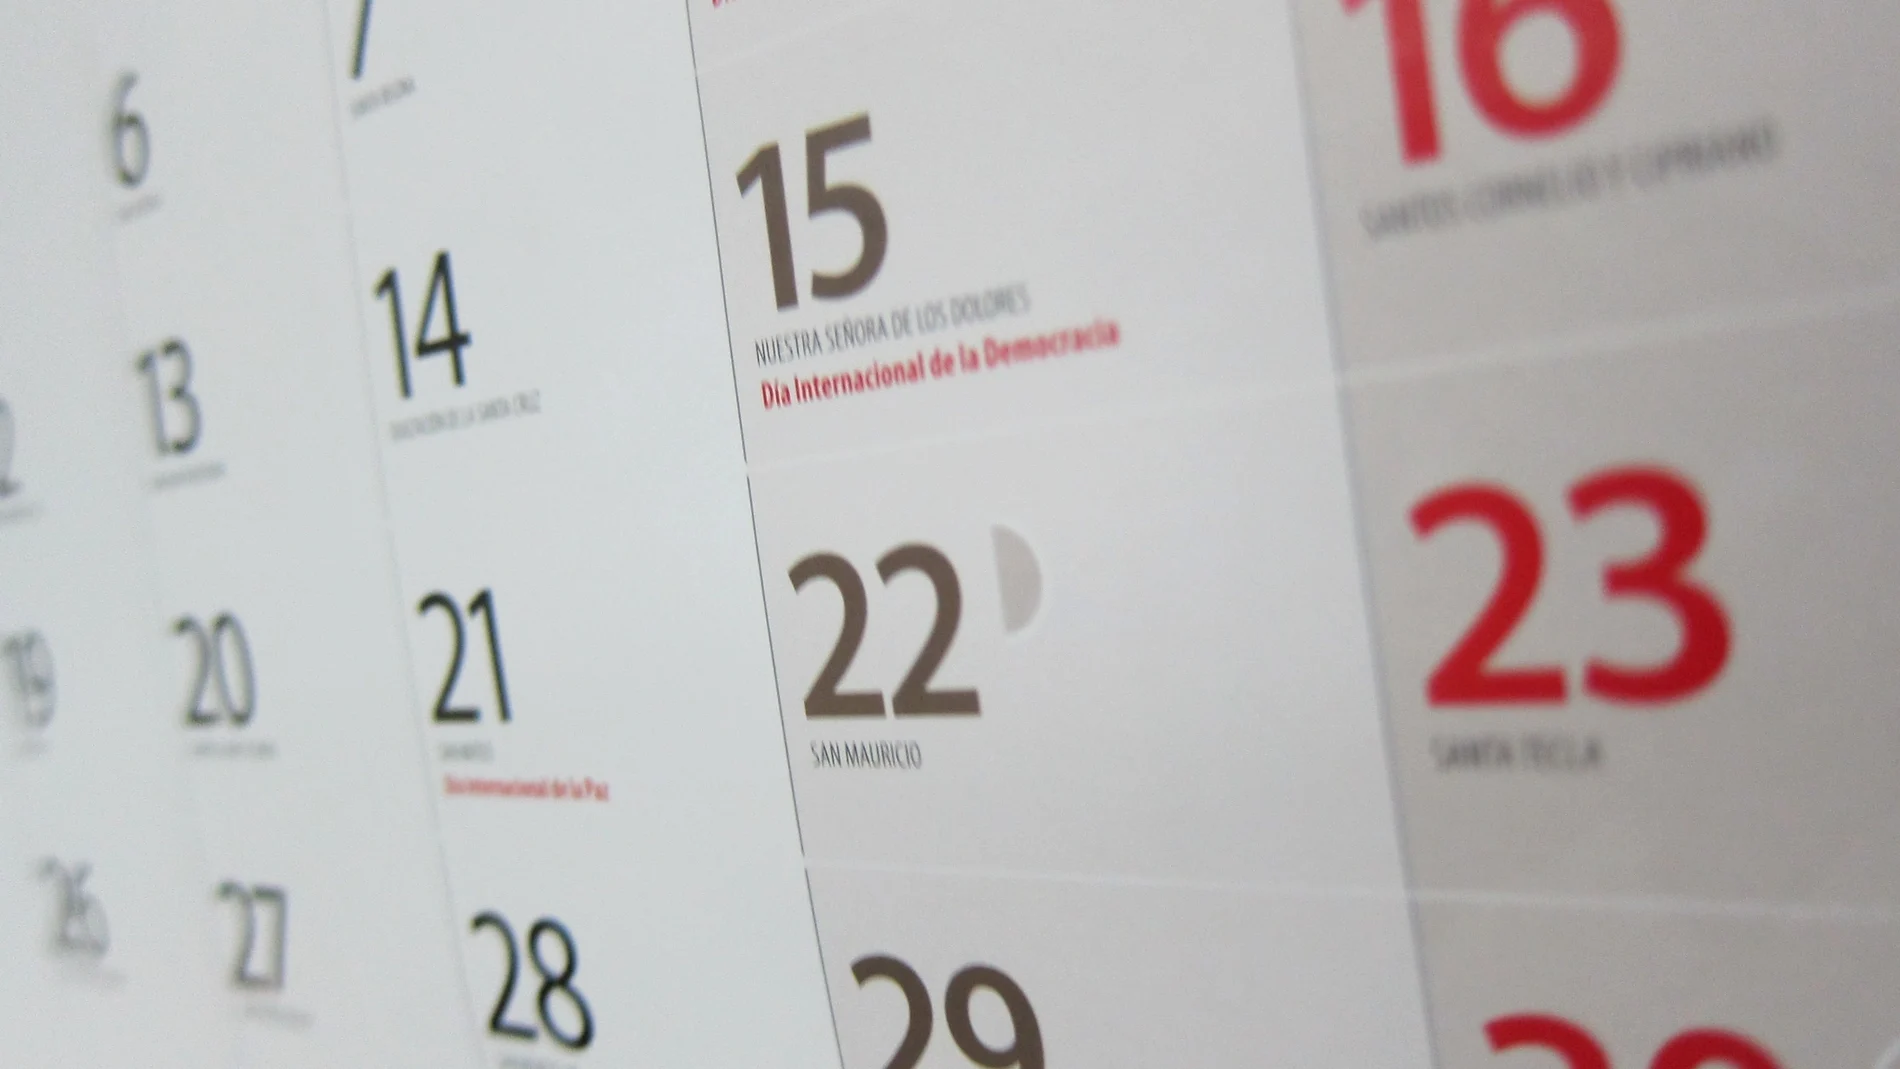 Calendario laboral: ¿qué festivos hay en mayo?